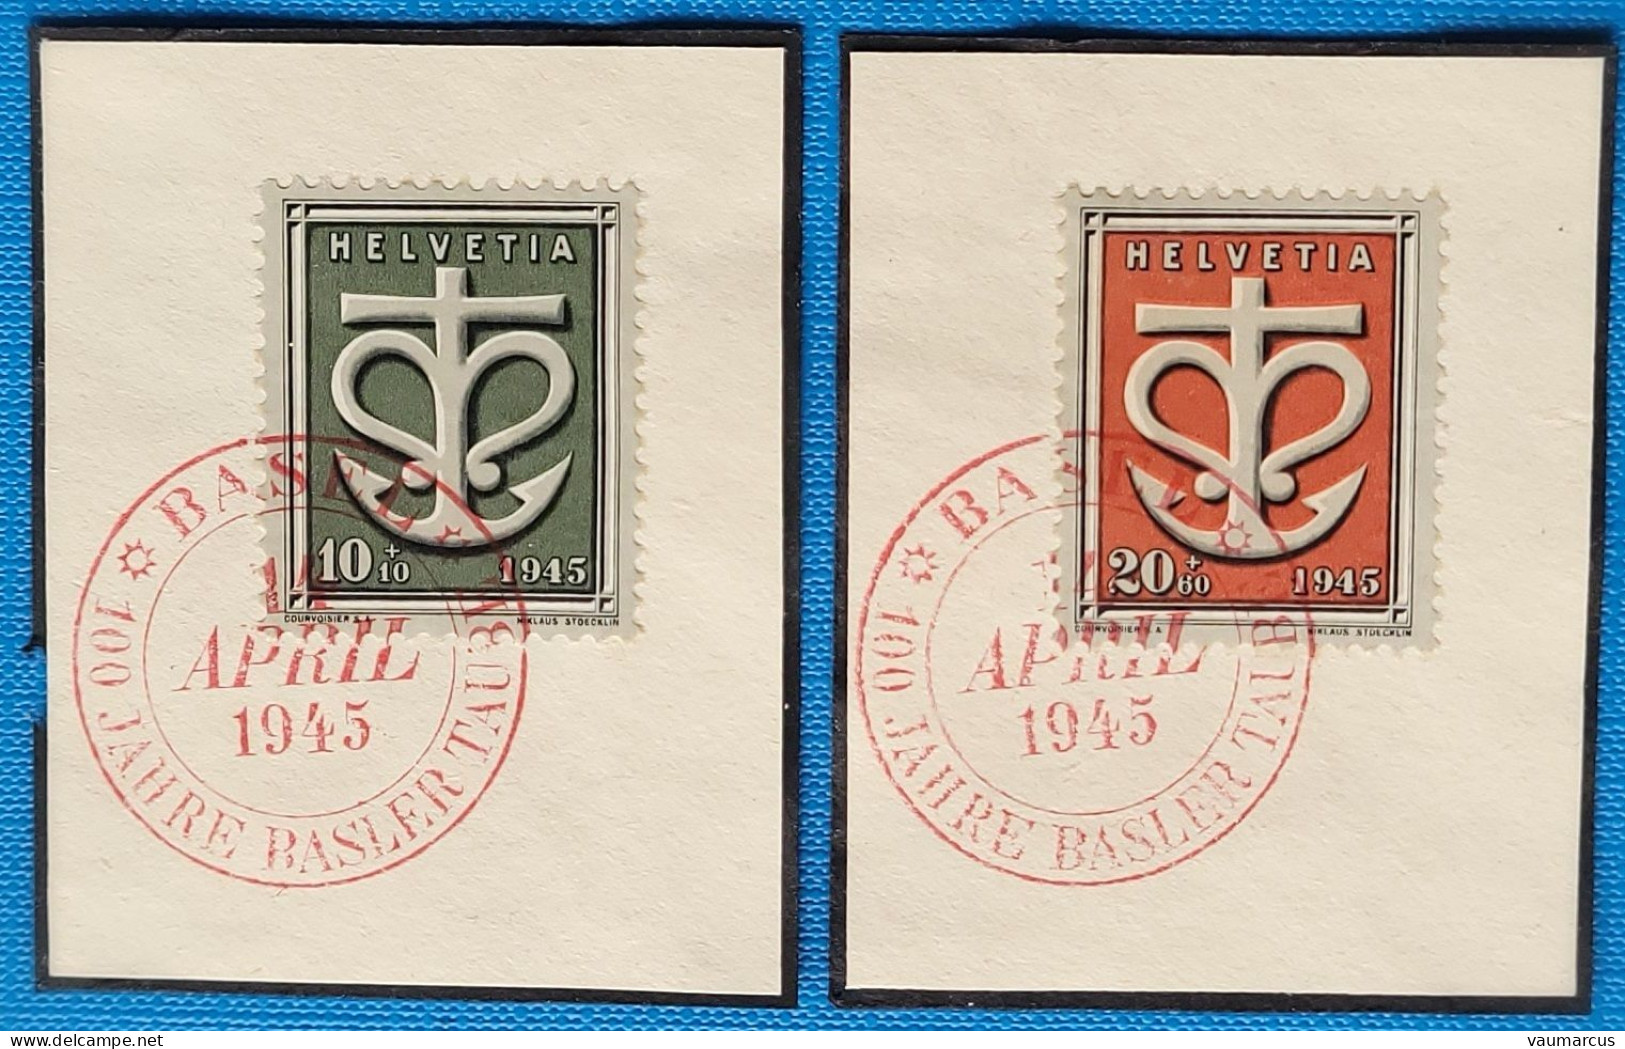 1945 Zu W 19-20 / Mi 443-444 / YT 403-404 Obl. BASEL 14.4.45 SBK 12 CHF Voir Description - Used Stamps